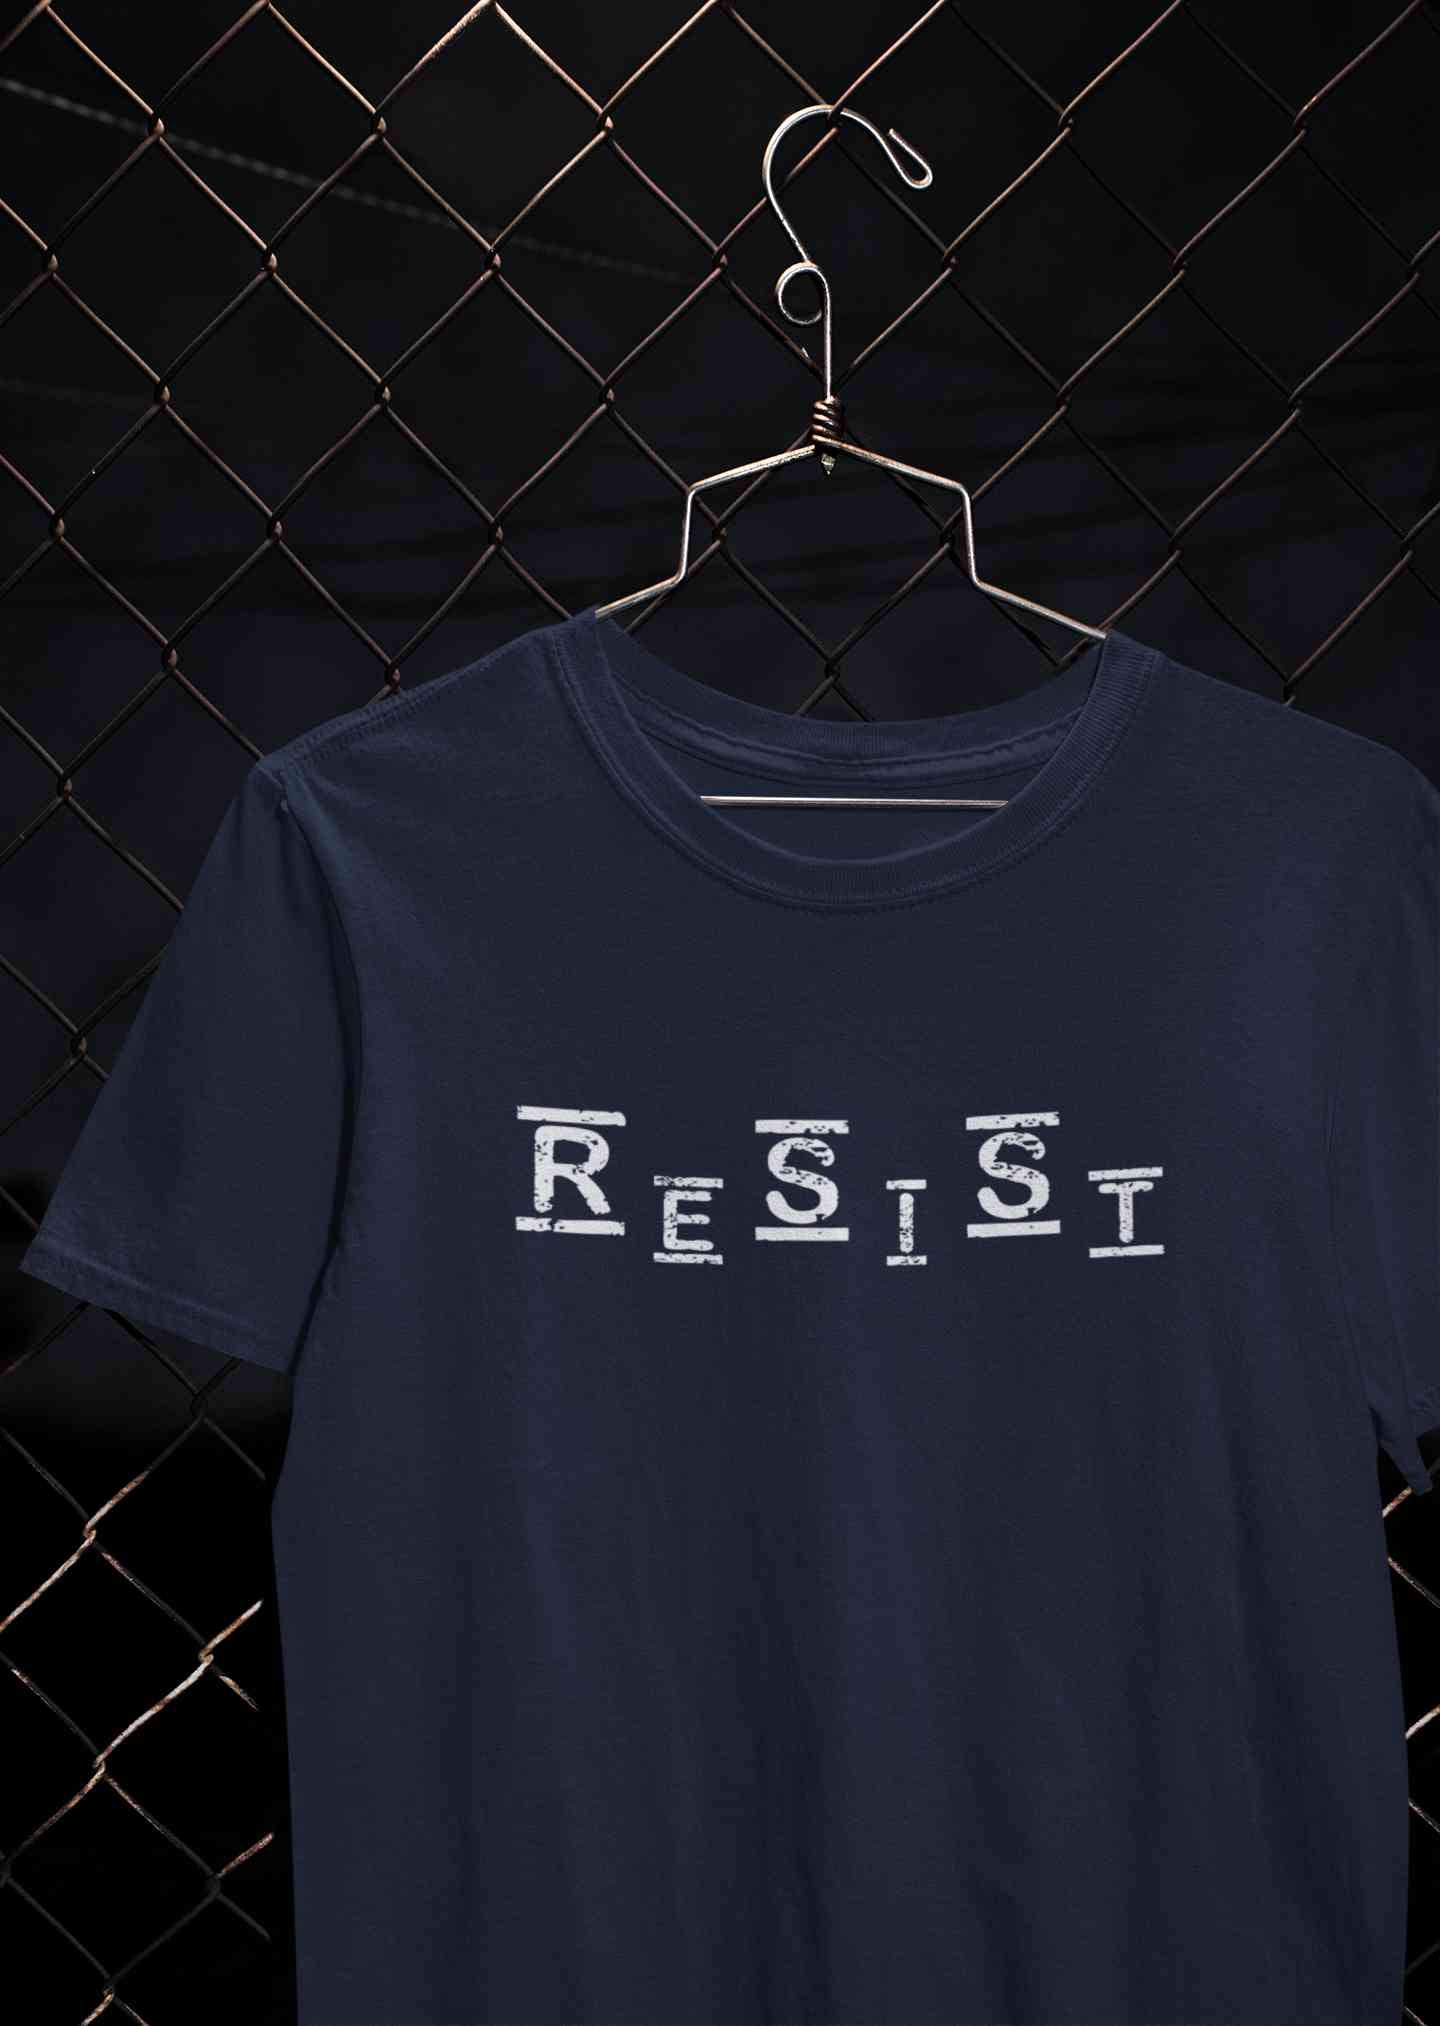 Resist Women Half Sleeves T-shirt- FunkyTeesClub